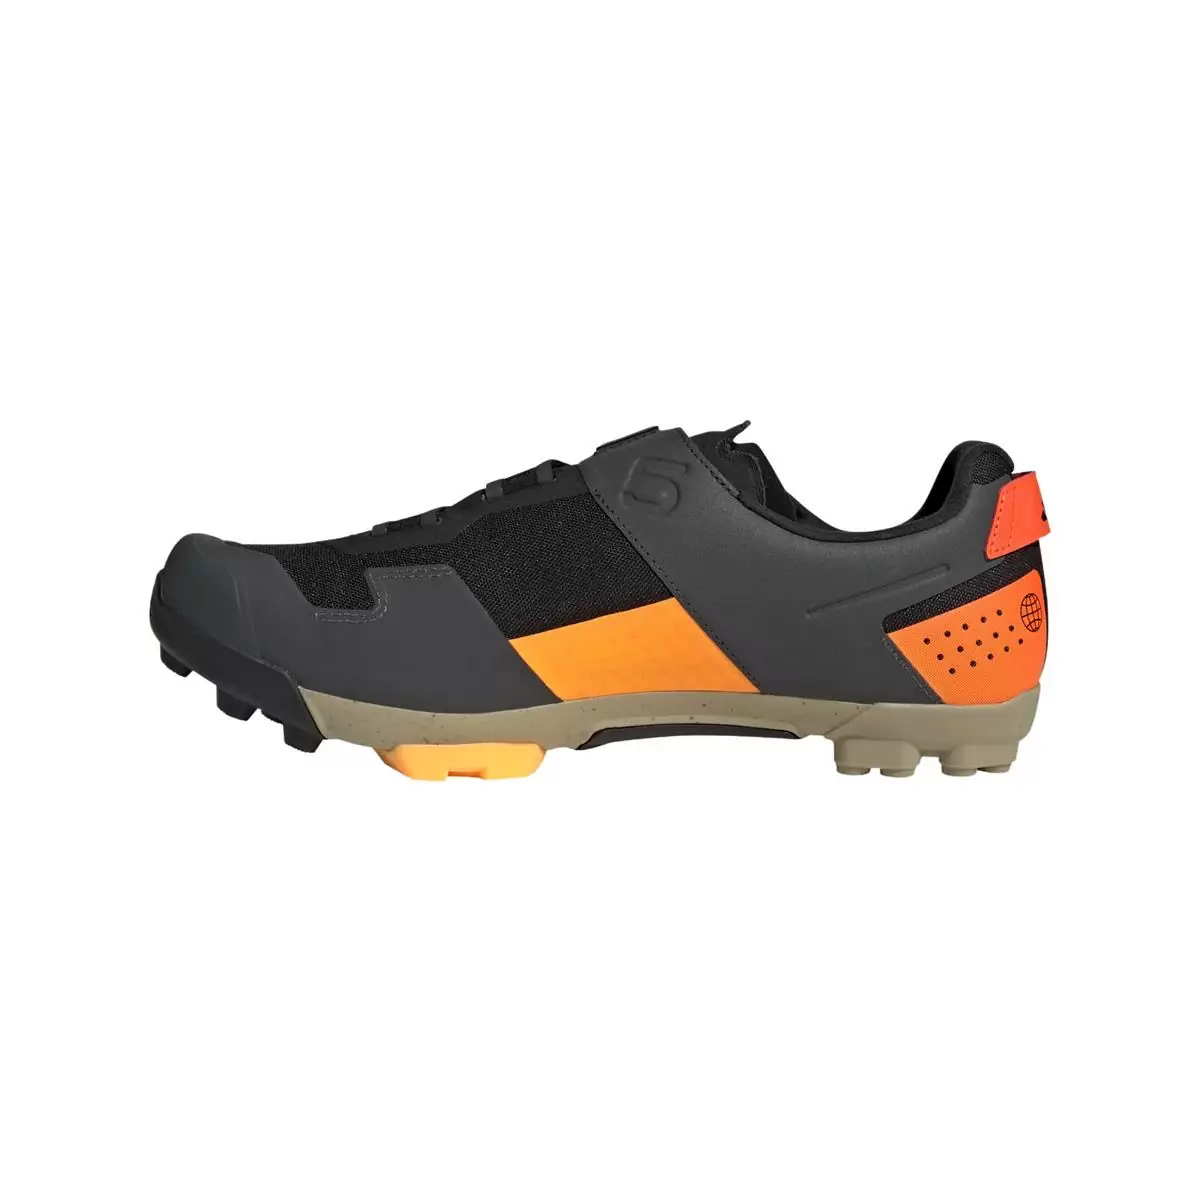 Clip 5.10 Kestrel Boa MTB Shoes Black/Orange Size 43 #2